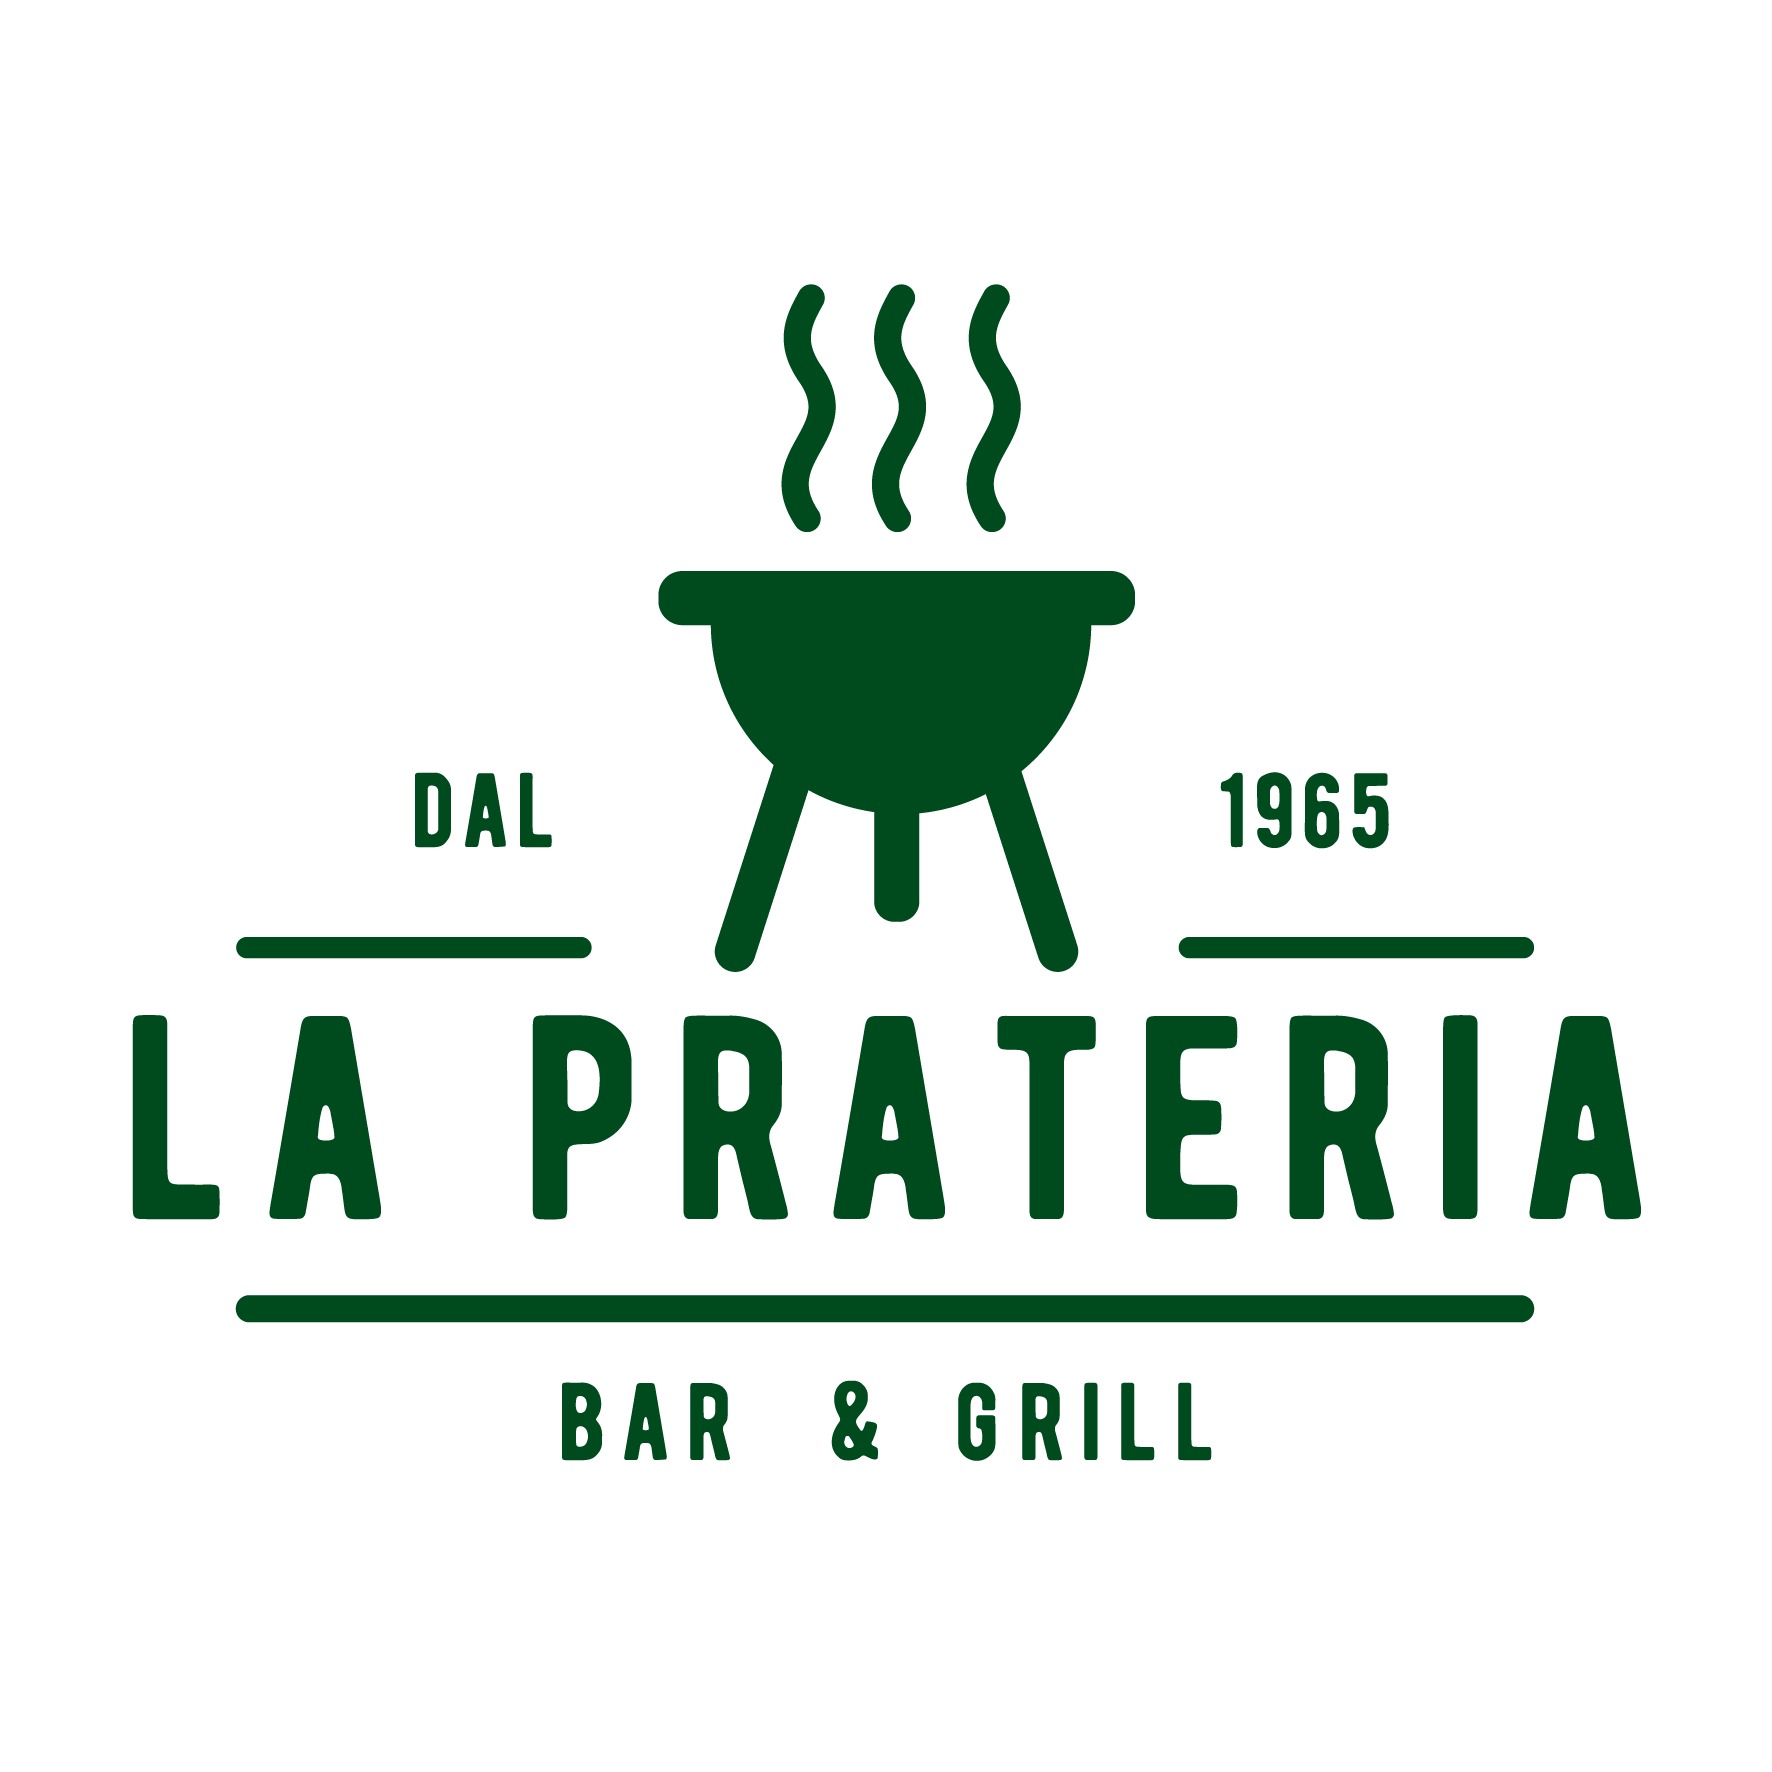 “La Prateria Bar & Grill”